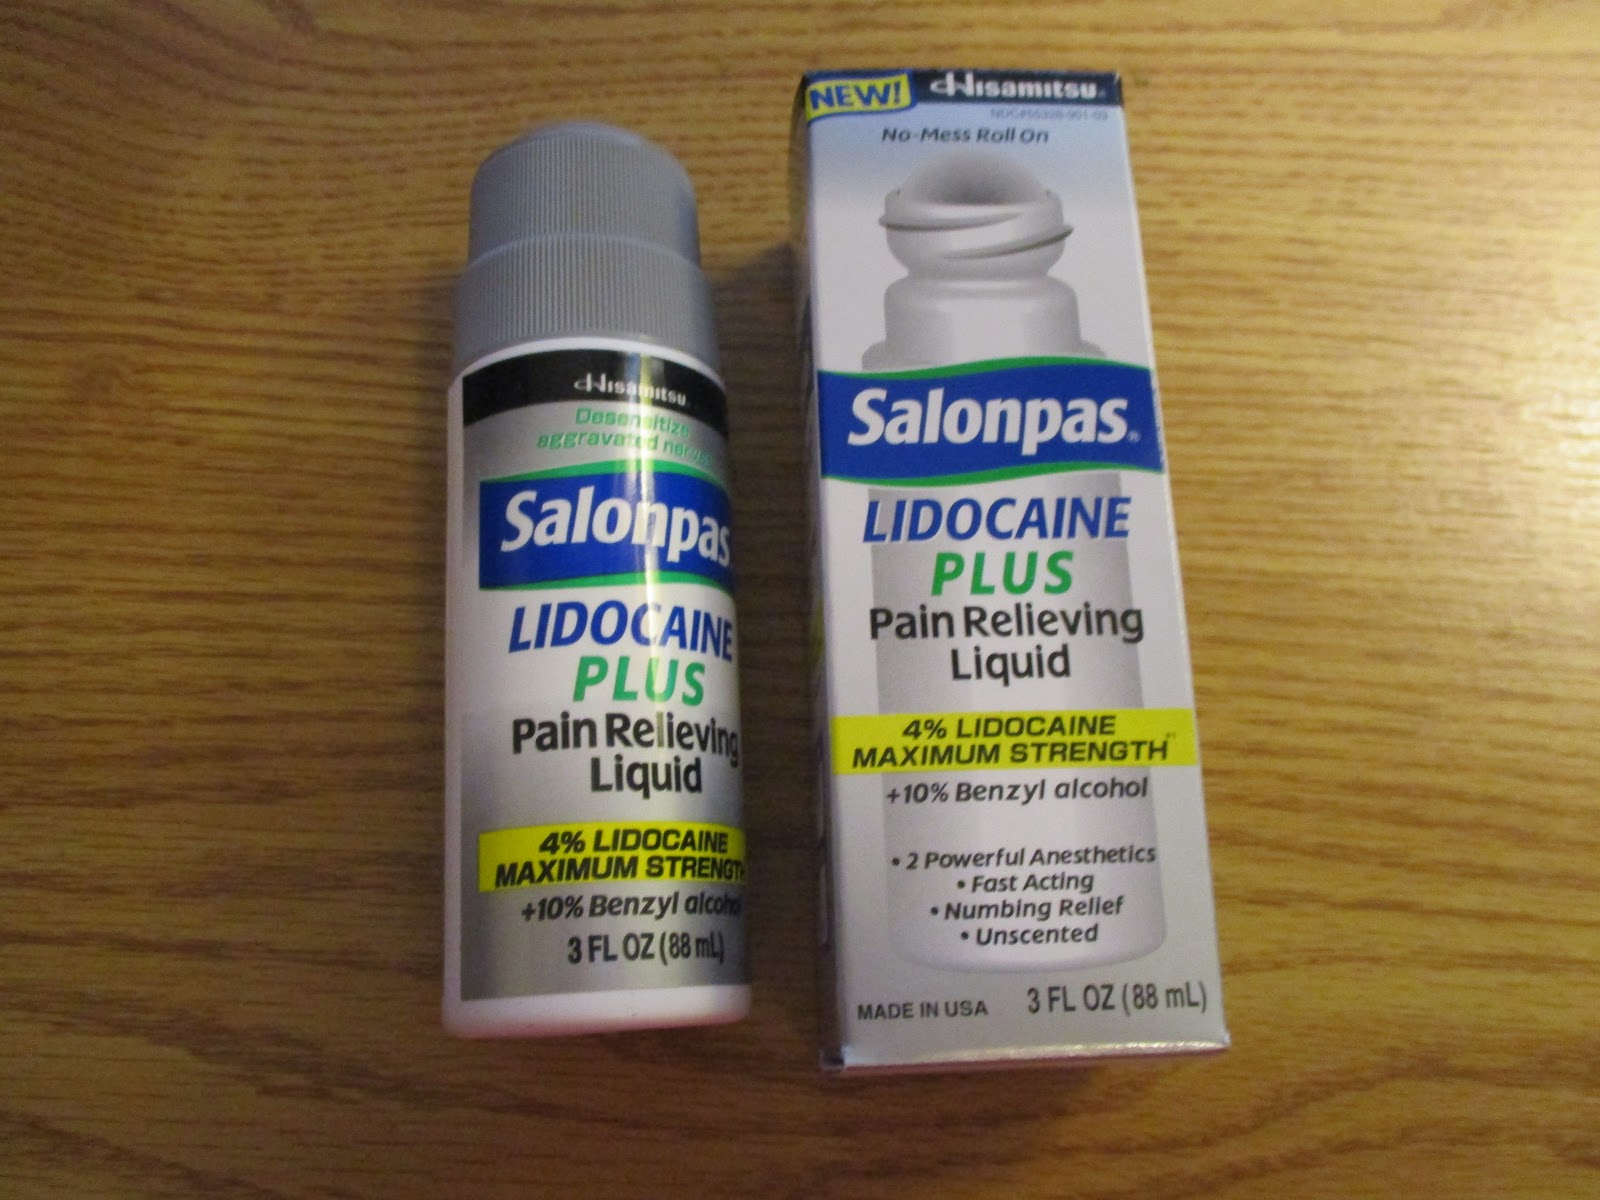 Missys Product Reviews Salonpas Lidocaine Plus Pain